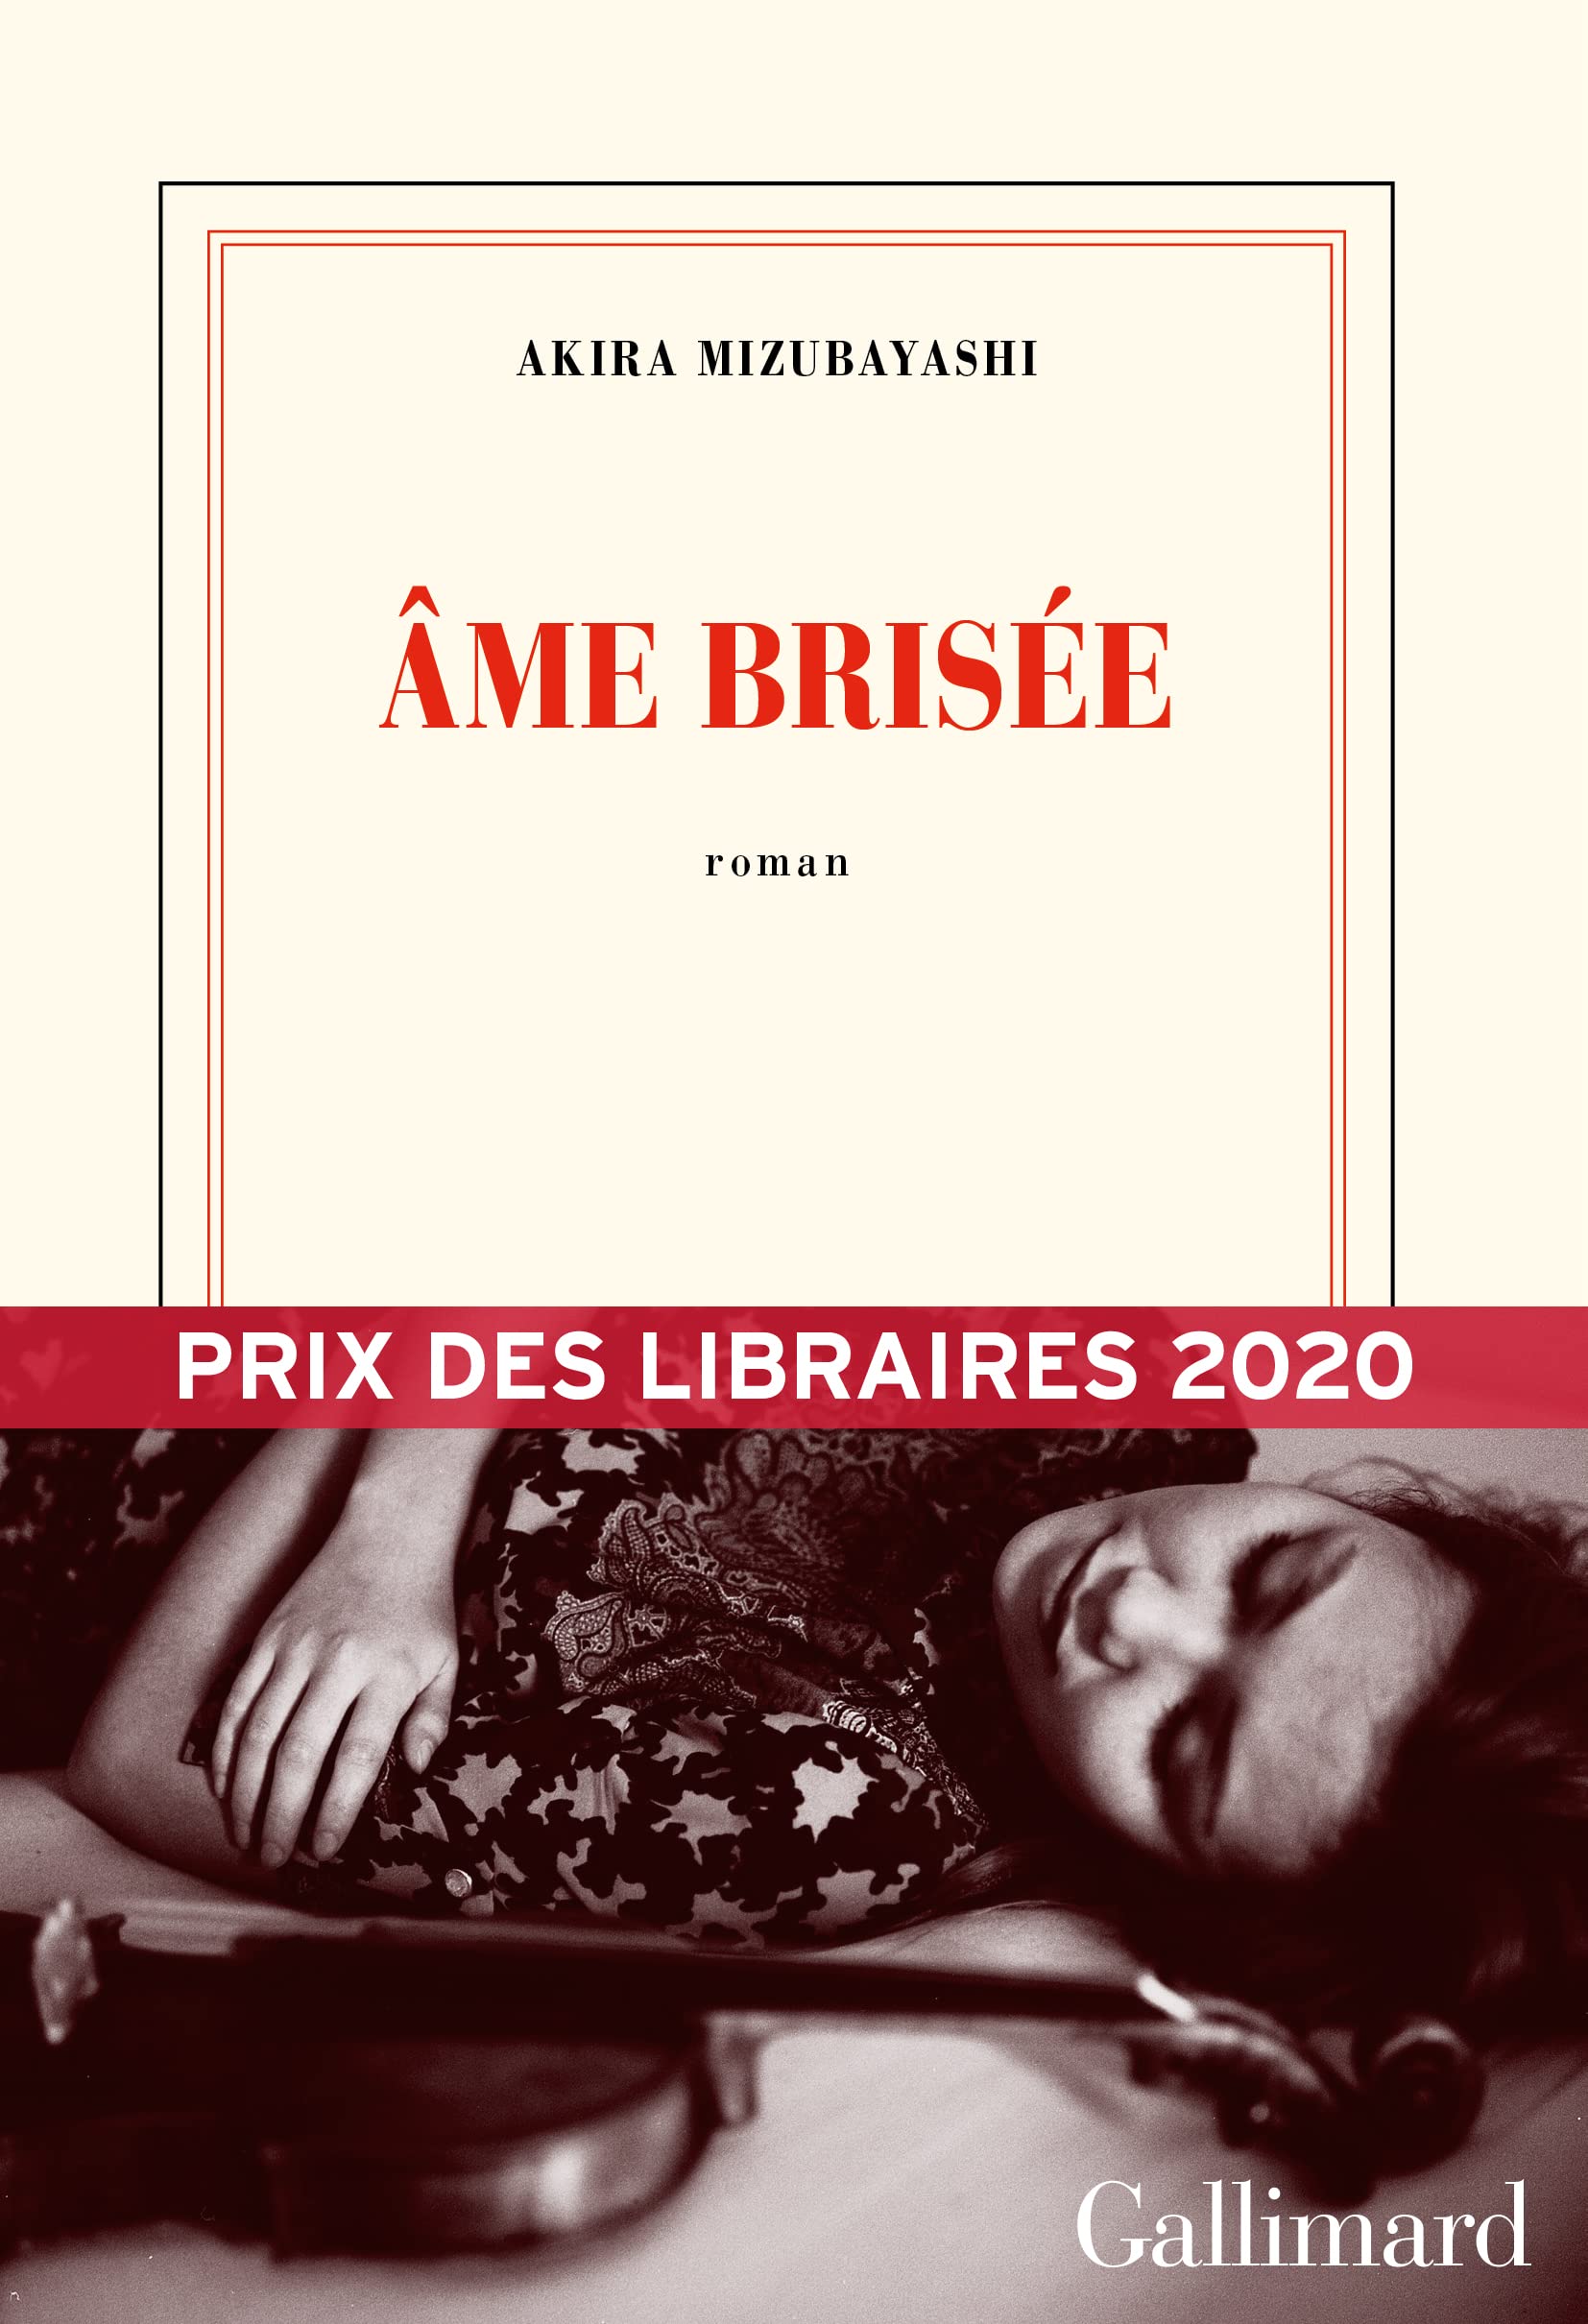 Âme brisée (French language, 2019, Éditions Gallimard)